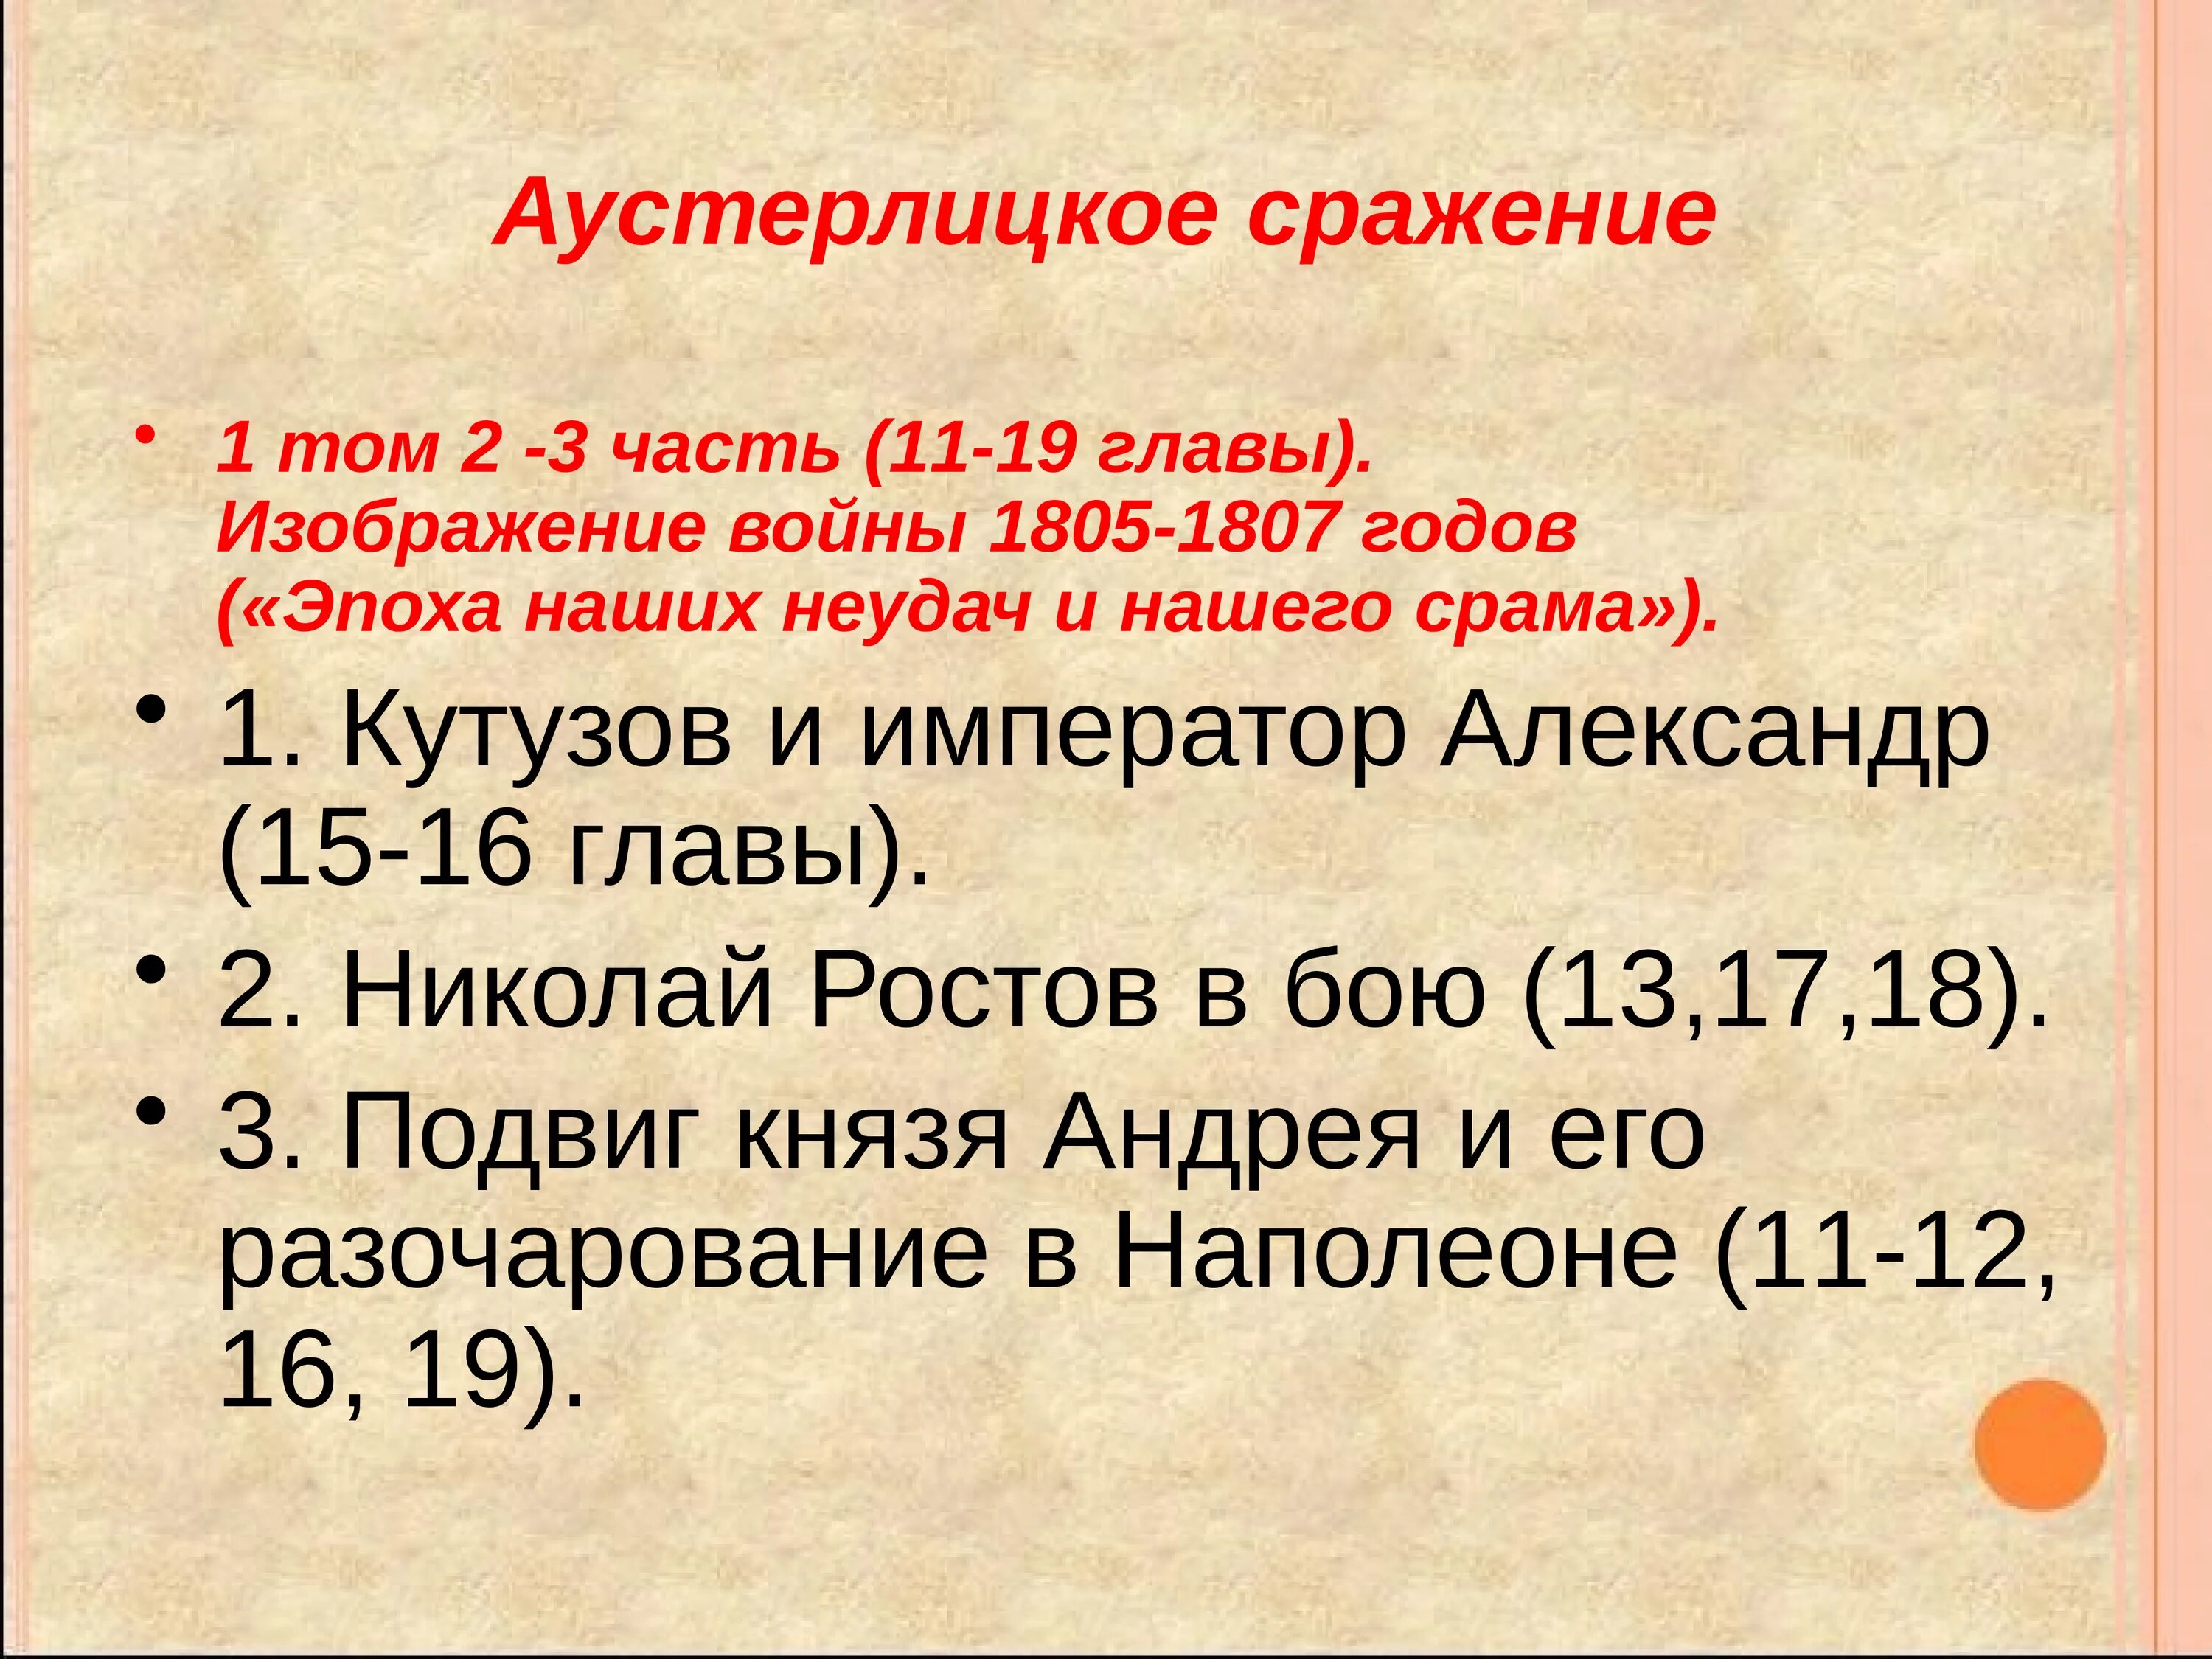 Почему 1805 стал эпохой неудач для россии. Изображение войны 1805-1807.